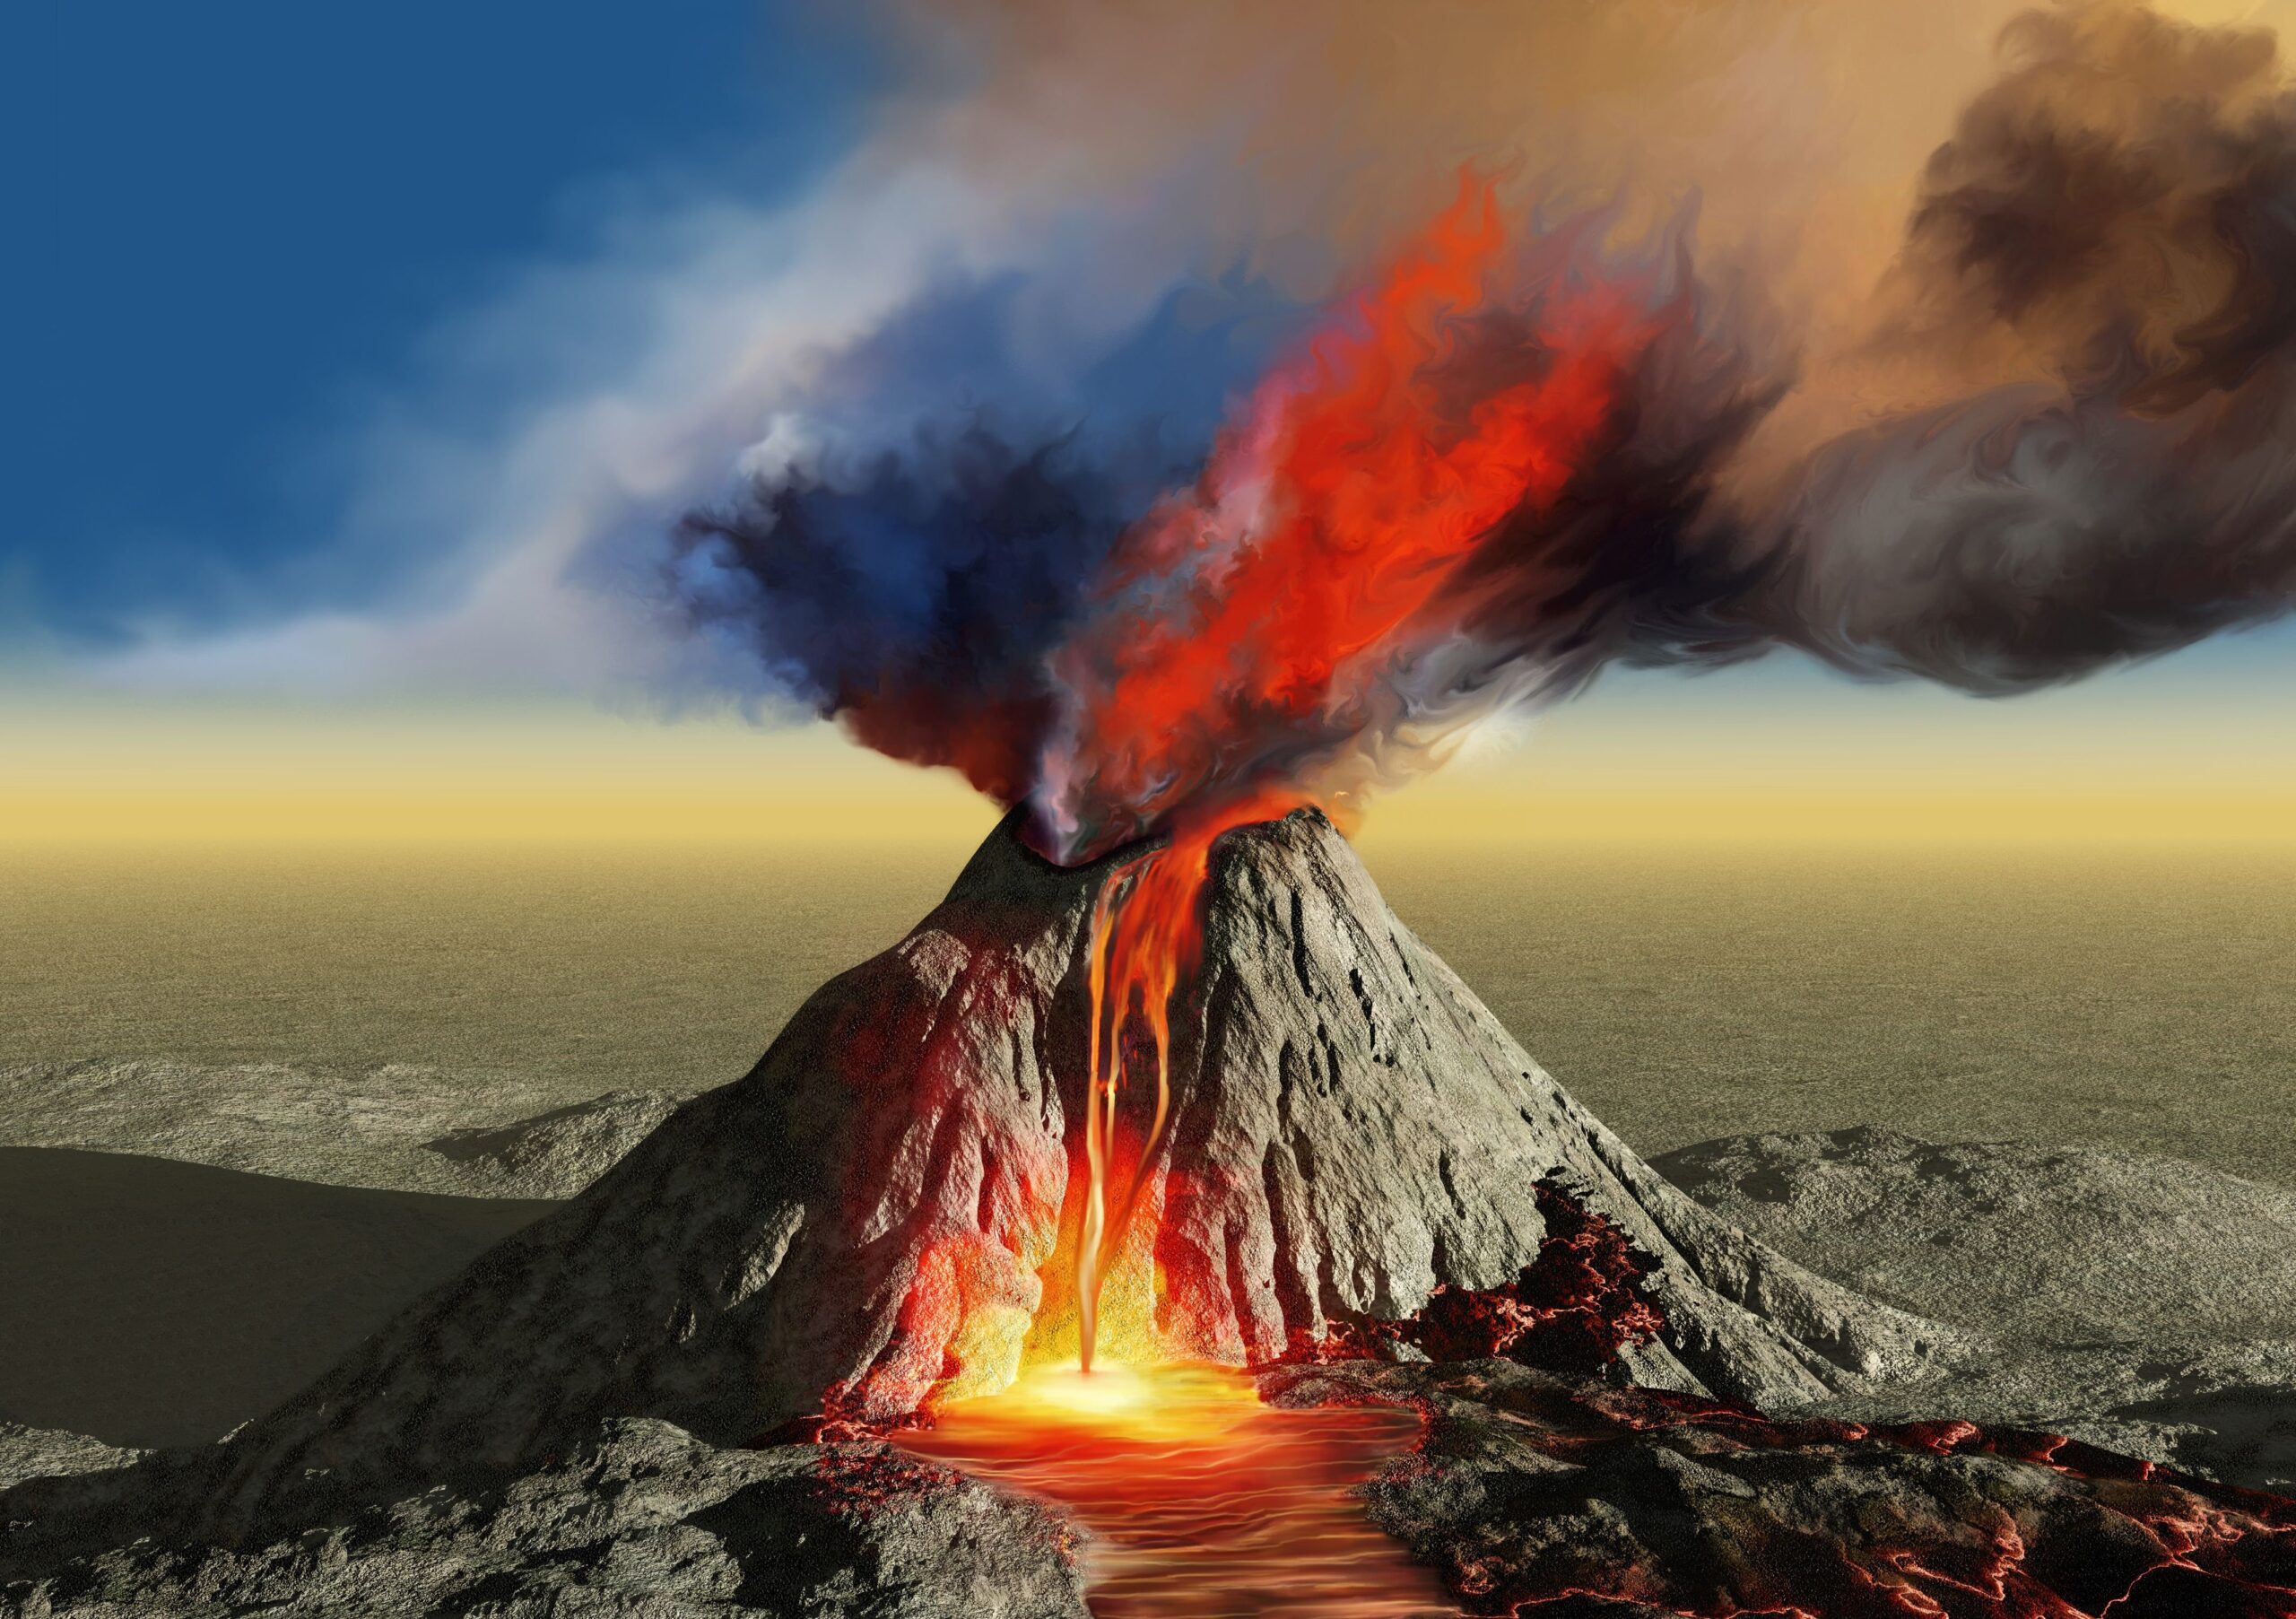 Phong cảnh núi lửa hoạt động 25